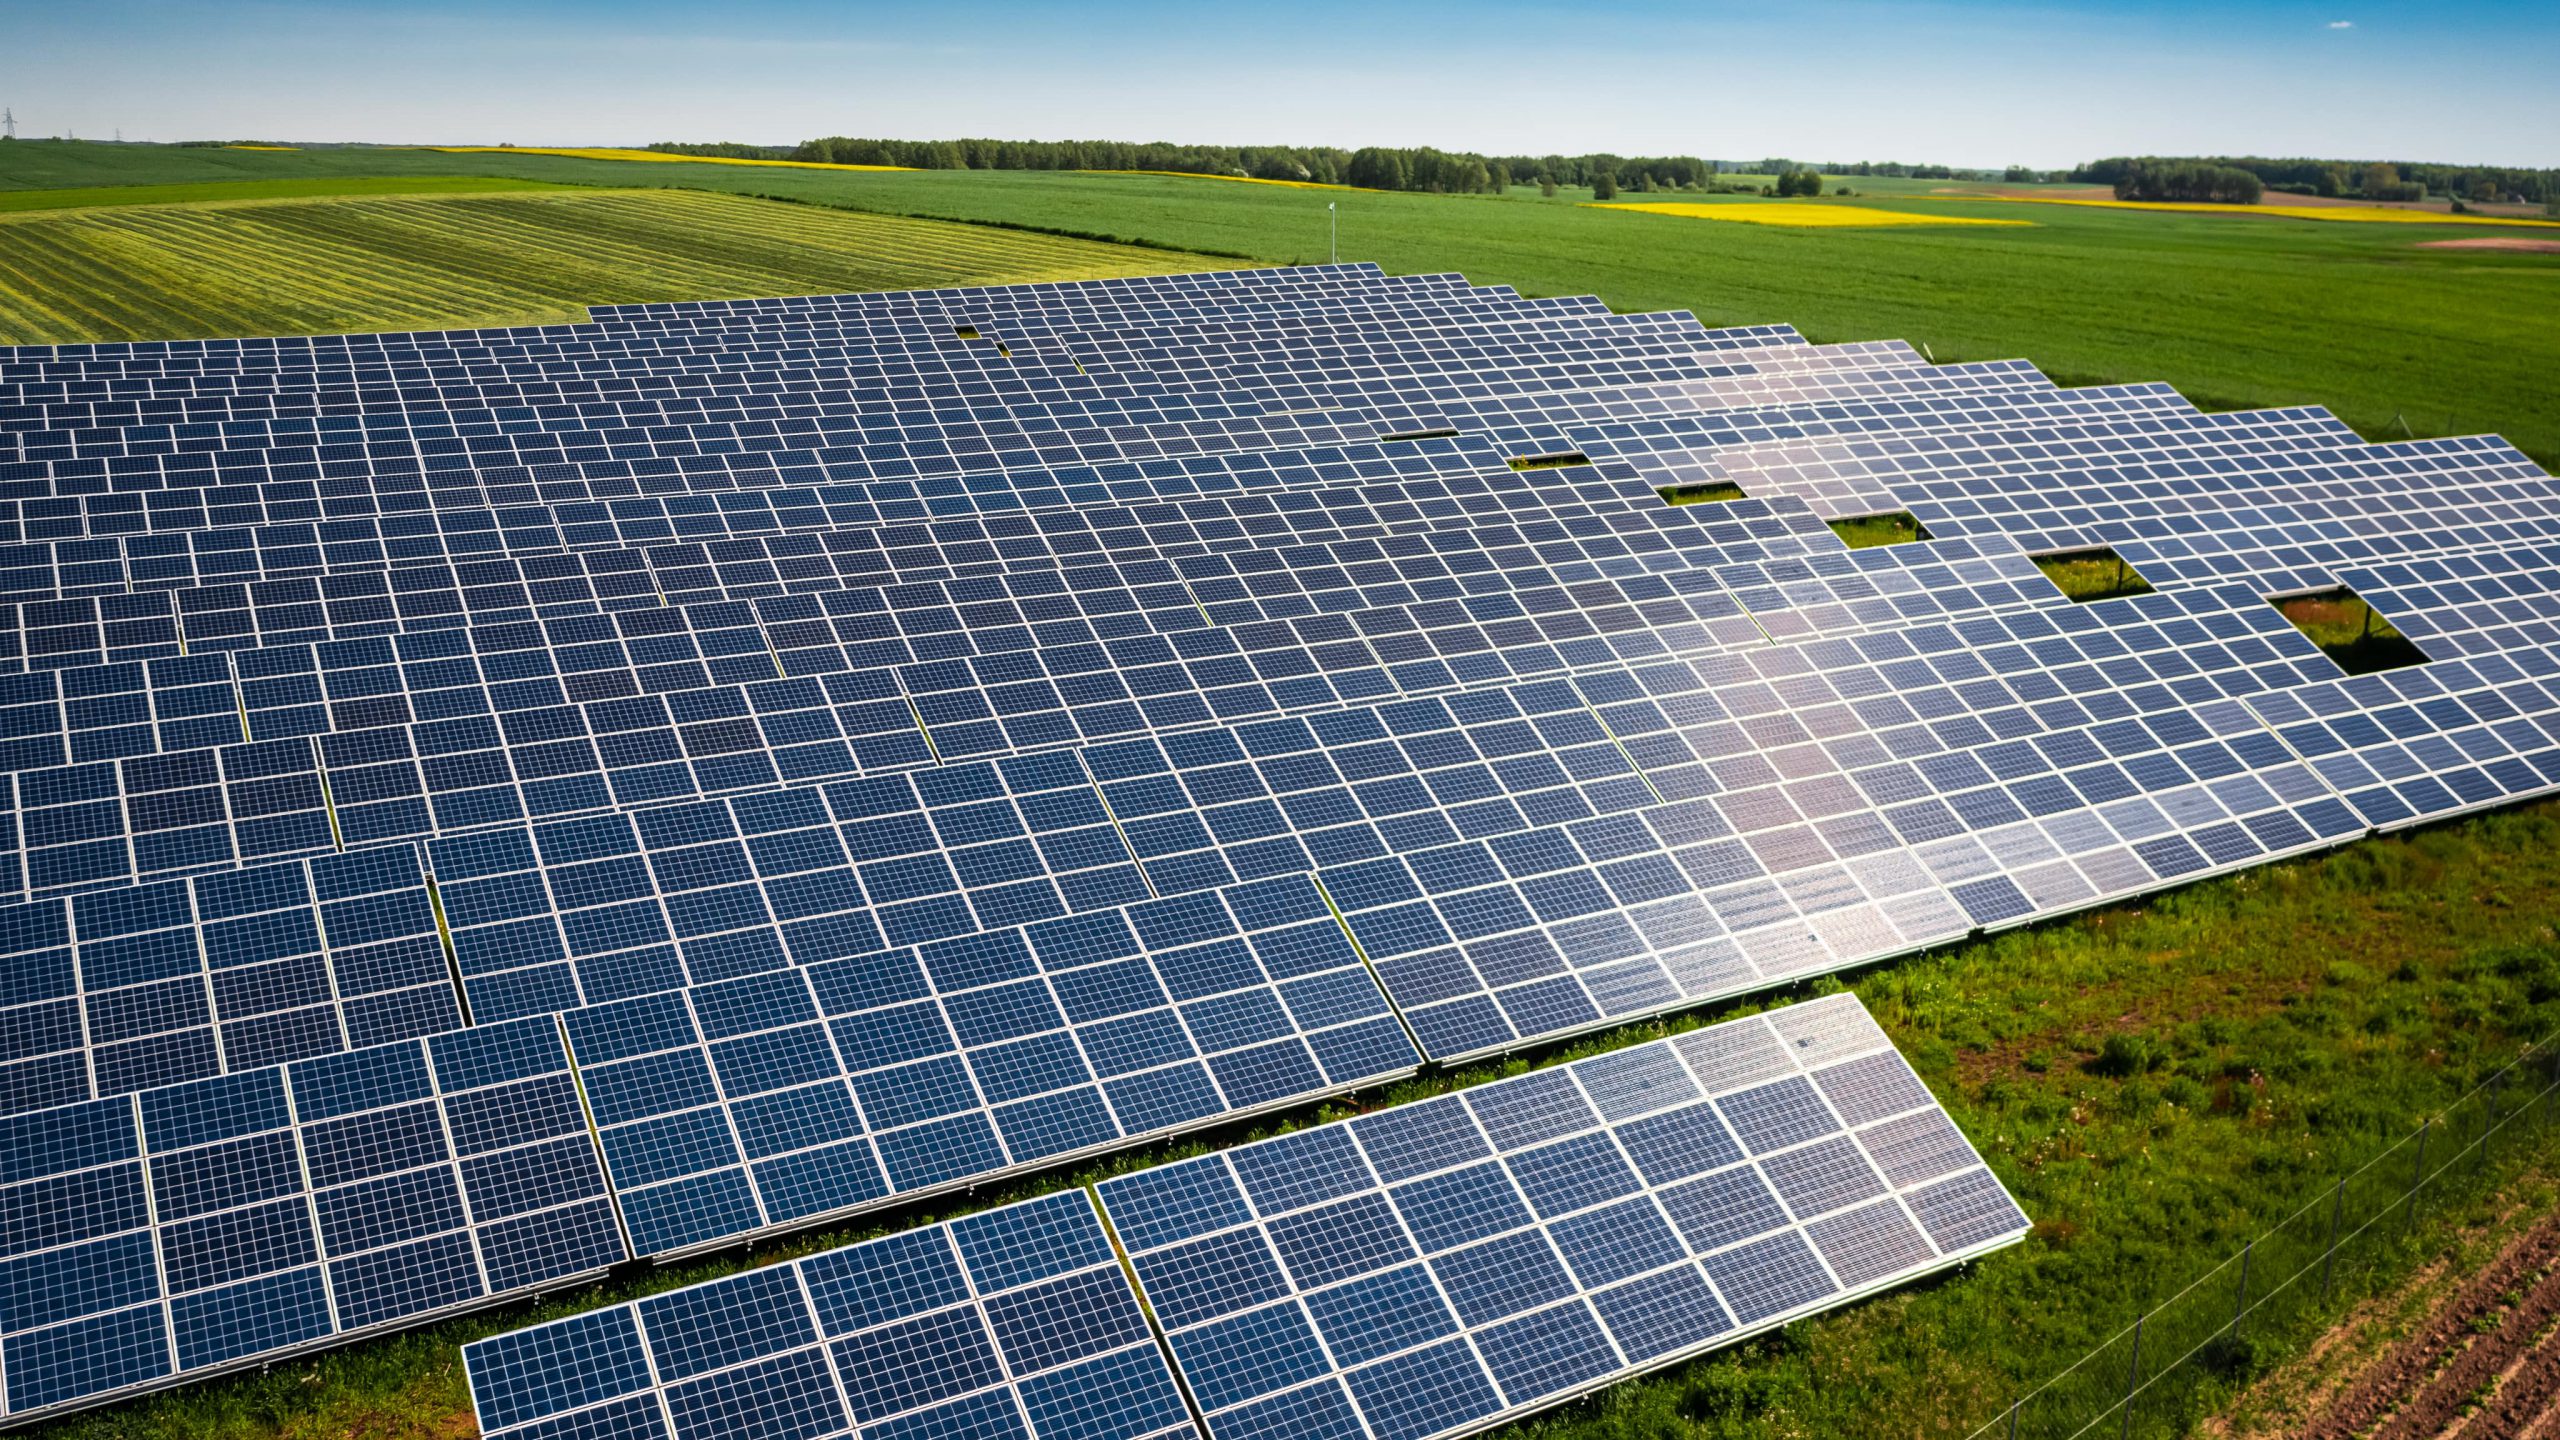 Soluciones energéticas: La Energía solar fotovoltaica